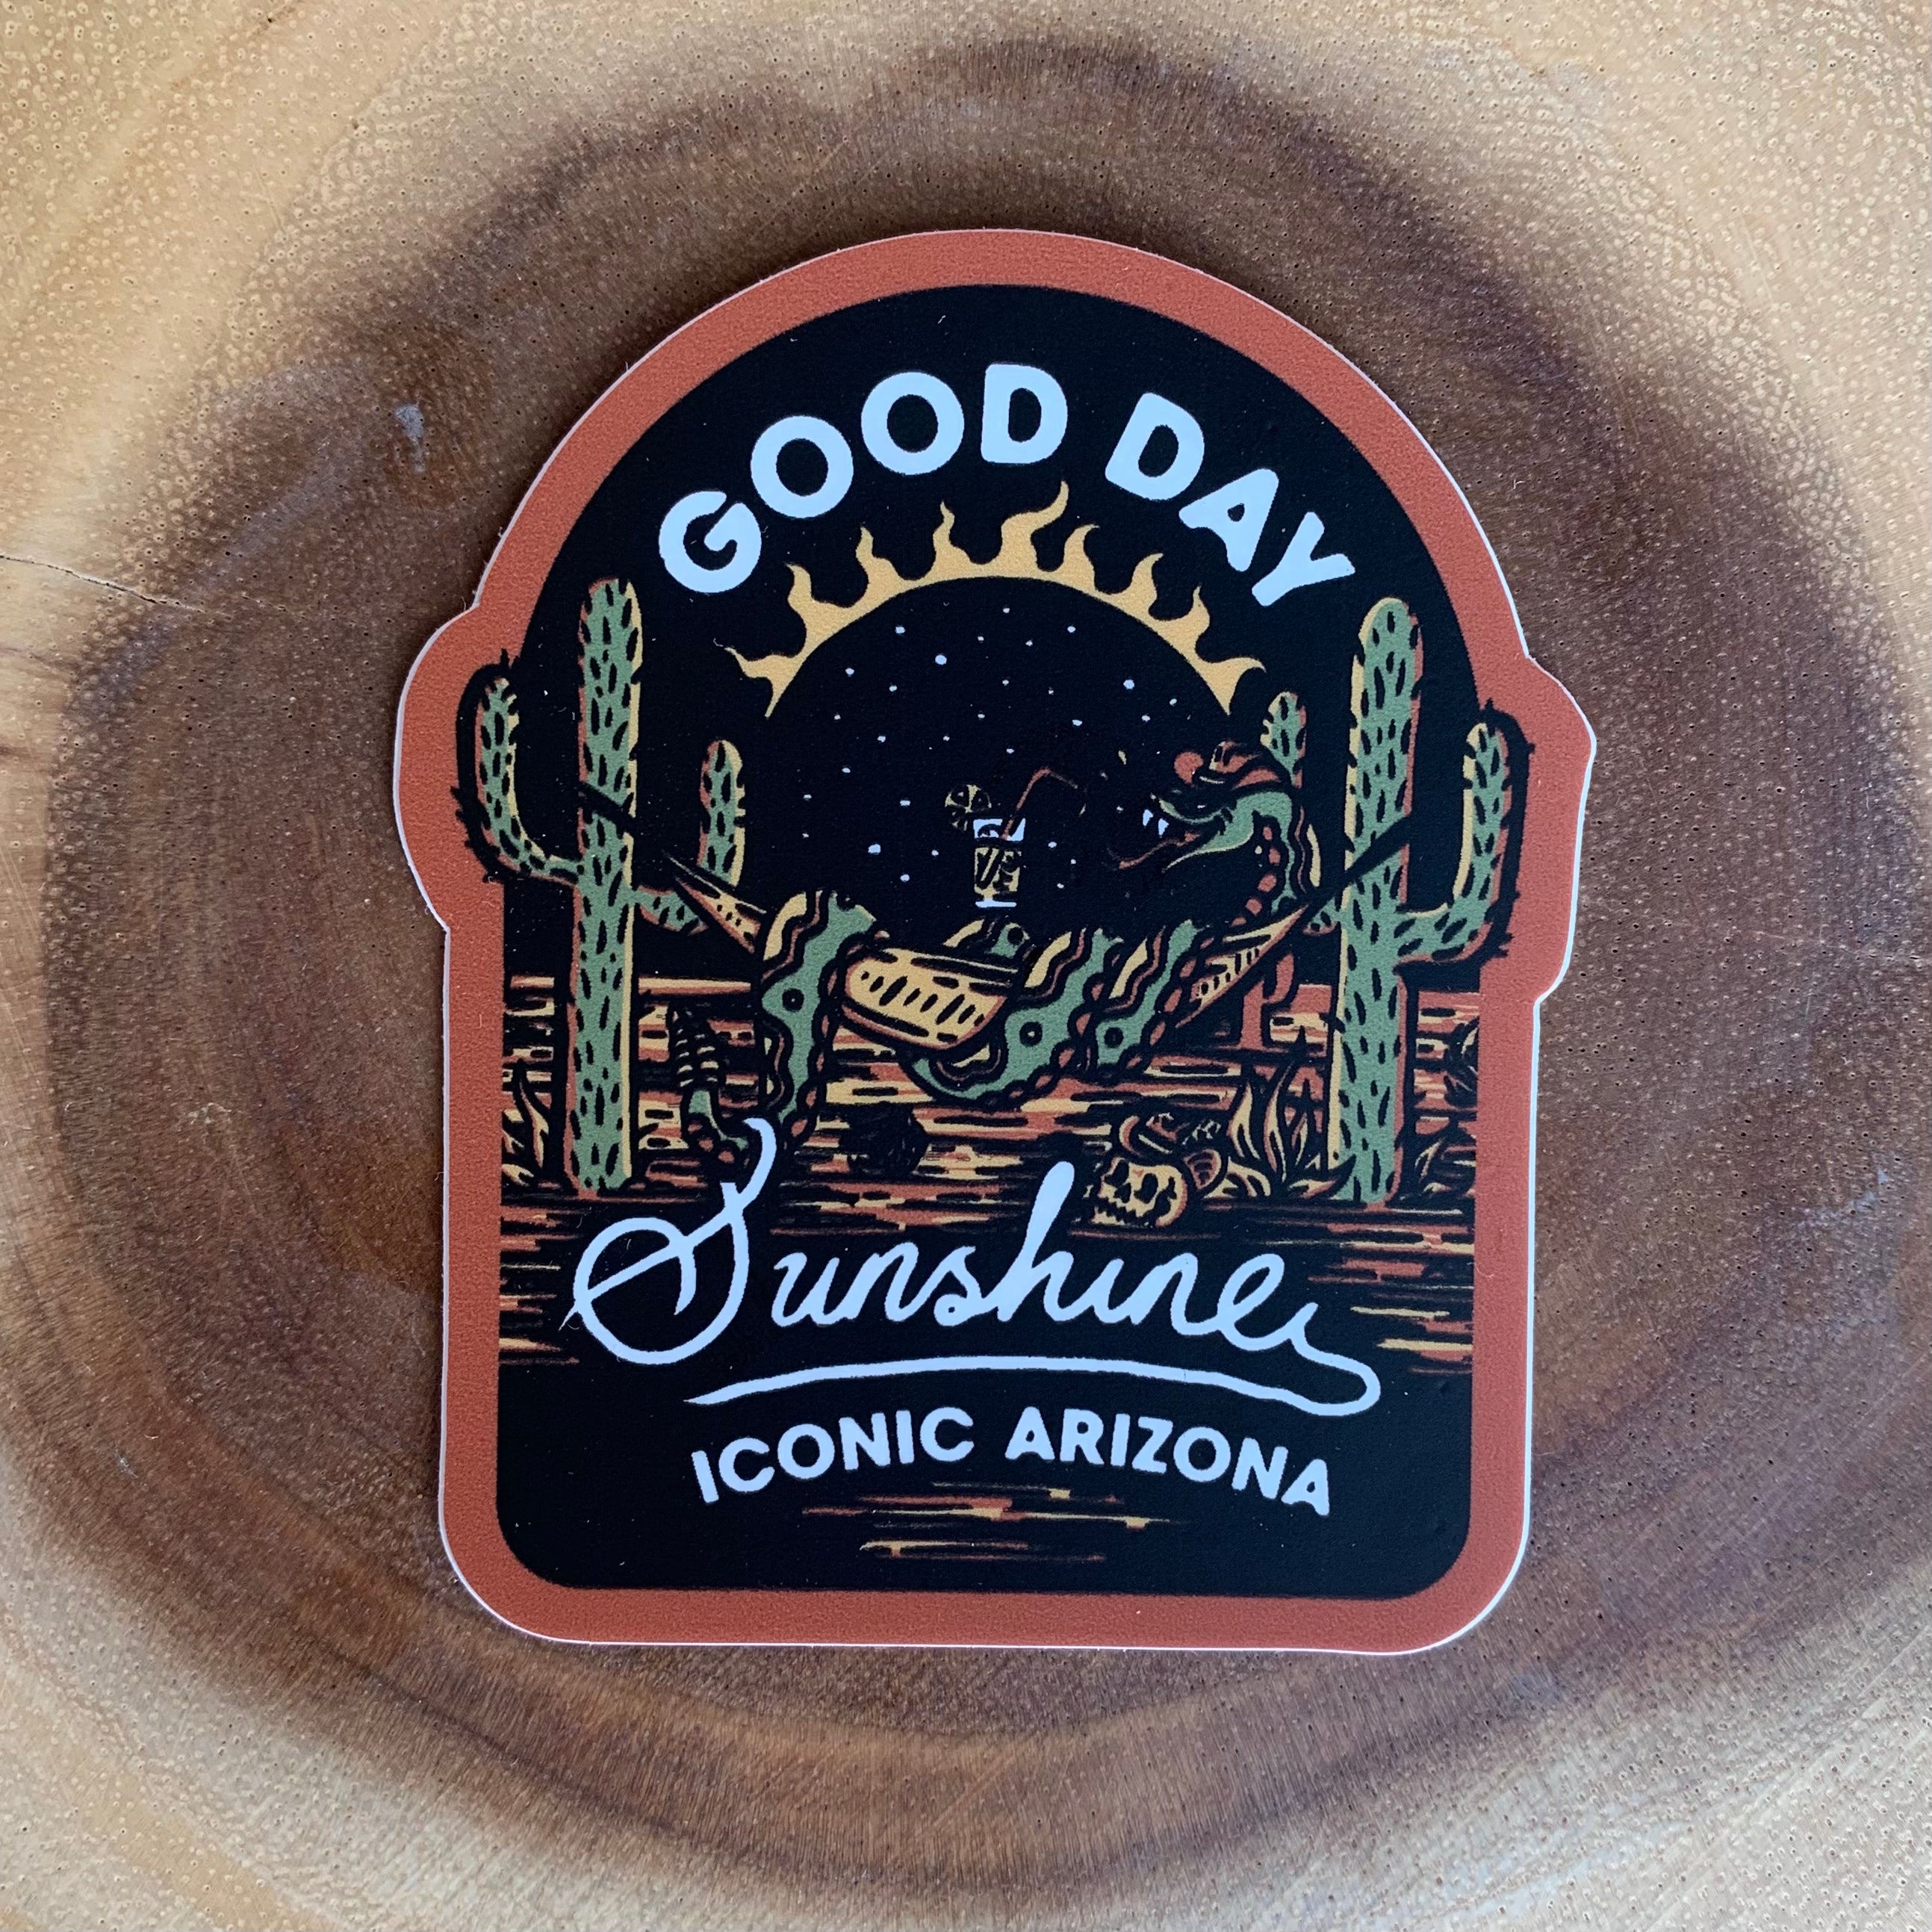 Good Day Sunshine Sticker